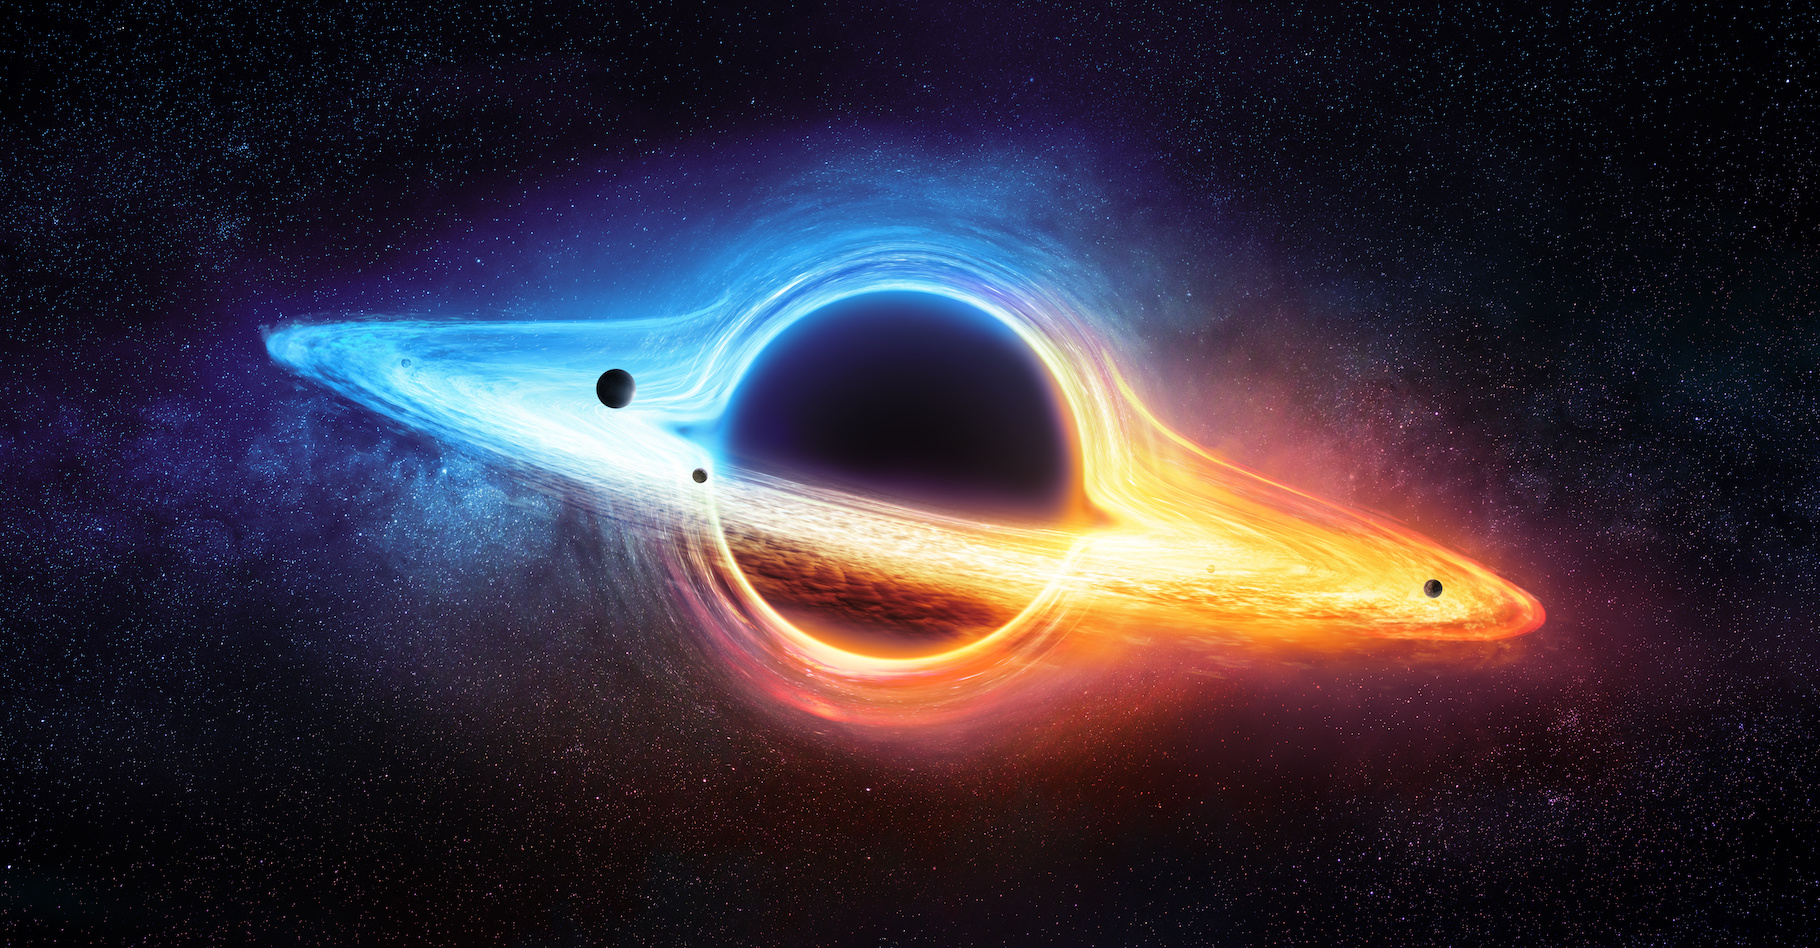 Les chercheurs du Goddard Space Flight Center de la Nasa nous invitent à découvrir pourquoi les trous noirs supermassifs sont ainsi nommés. © Romolo Tavani, Adobe Stock